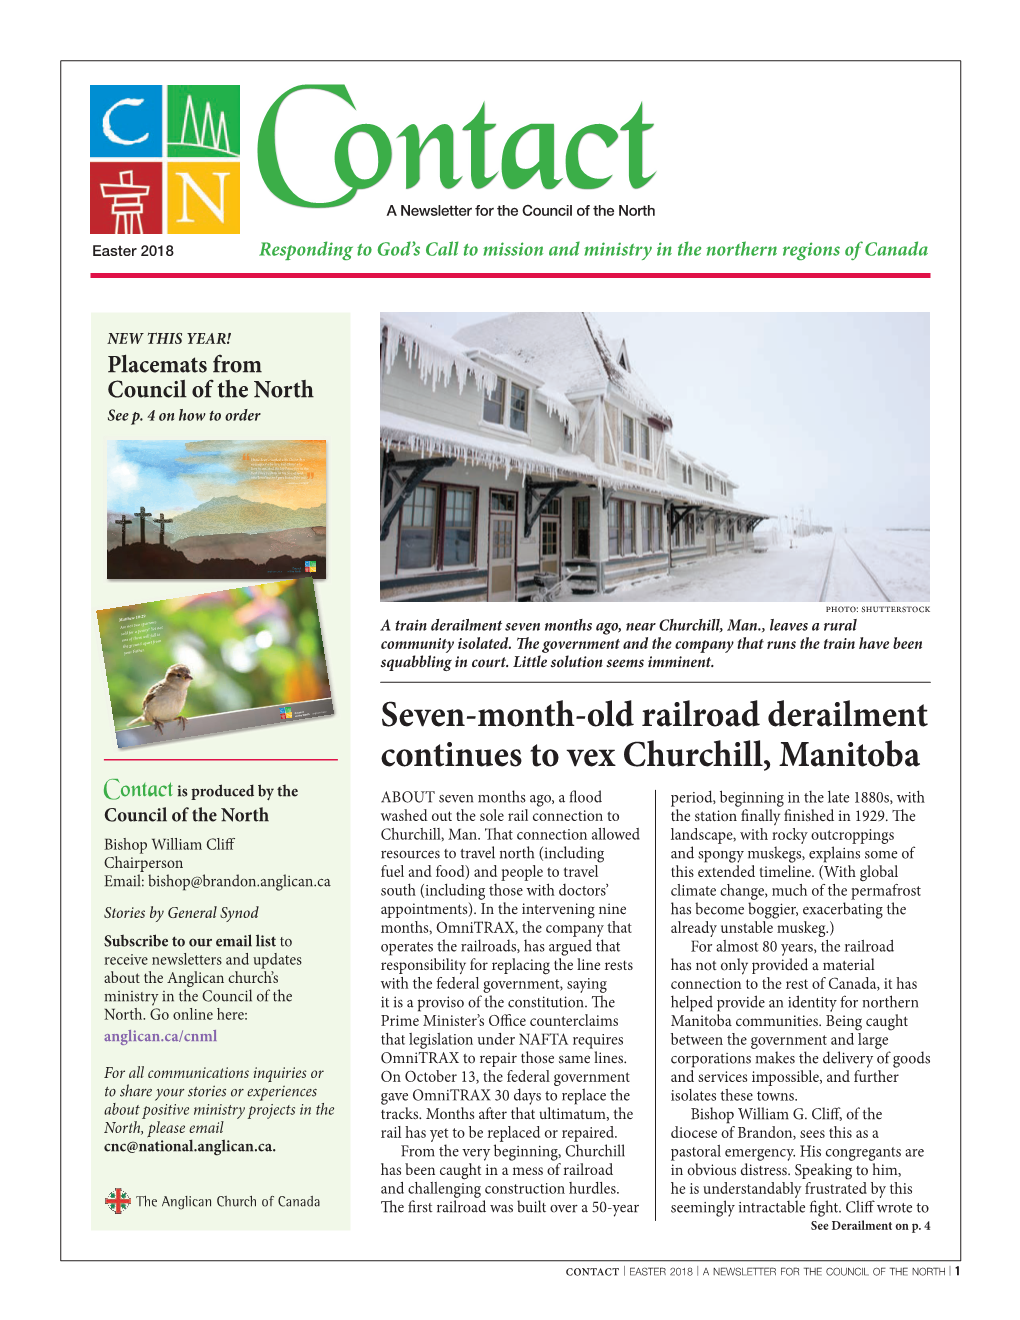 Seven-Month-Old Railroad Derailment Continues to Vex Churchill, Manitoba